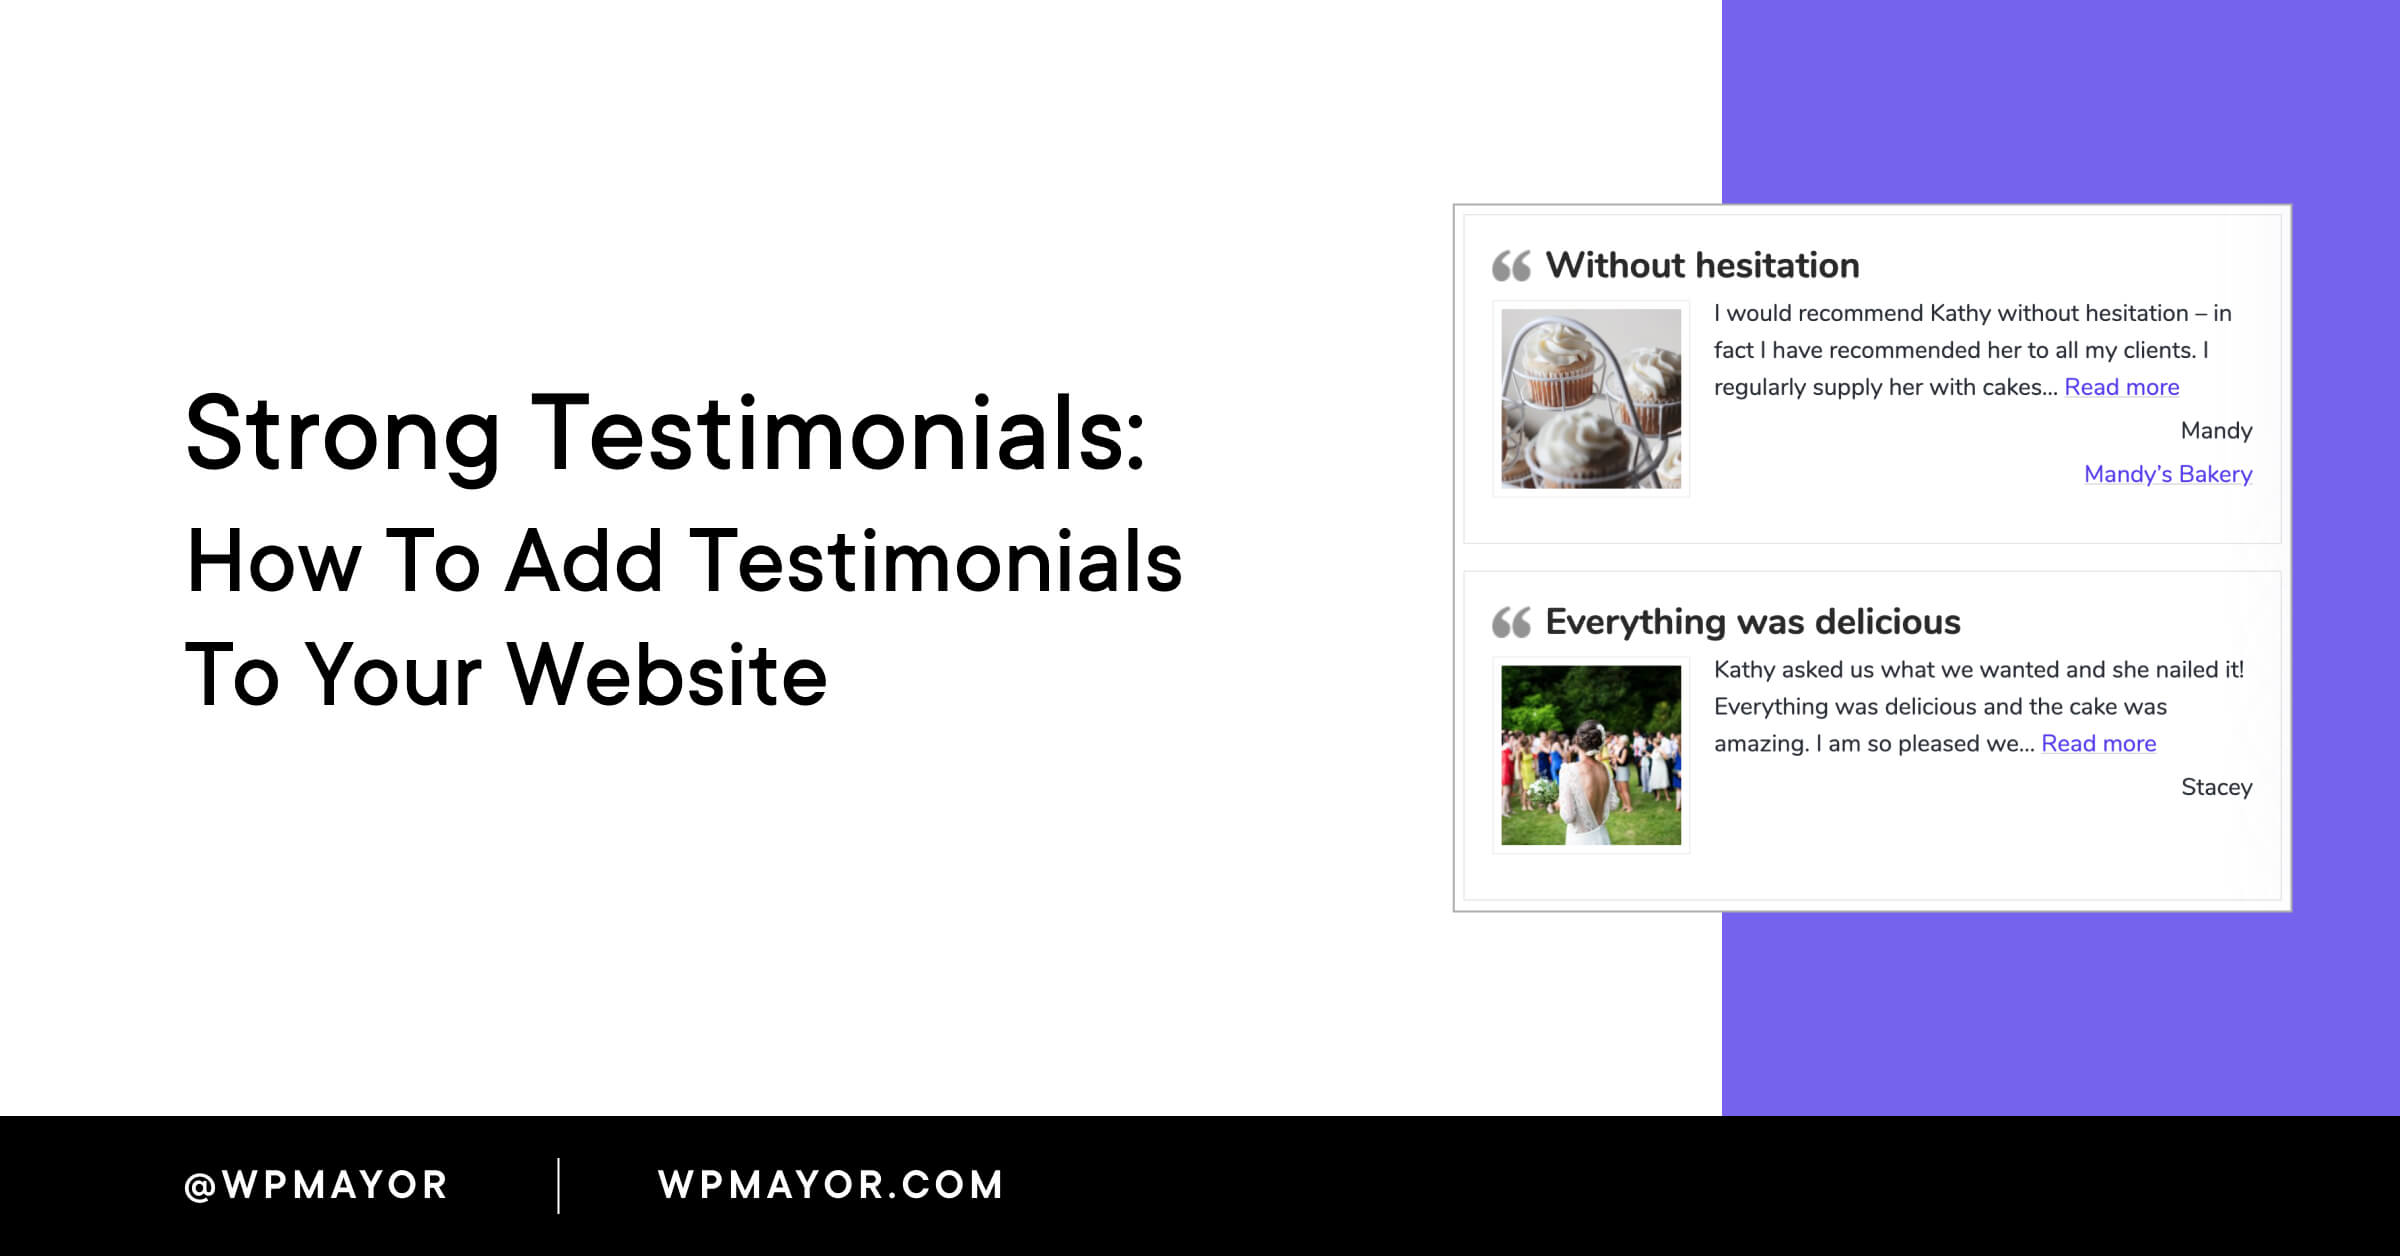 Testimonianze forti: come aggiungere testimonianze al tuo sito web